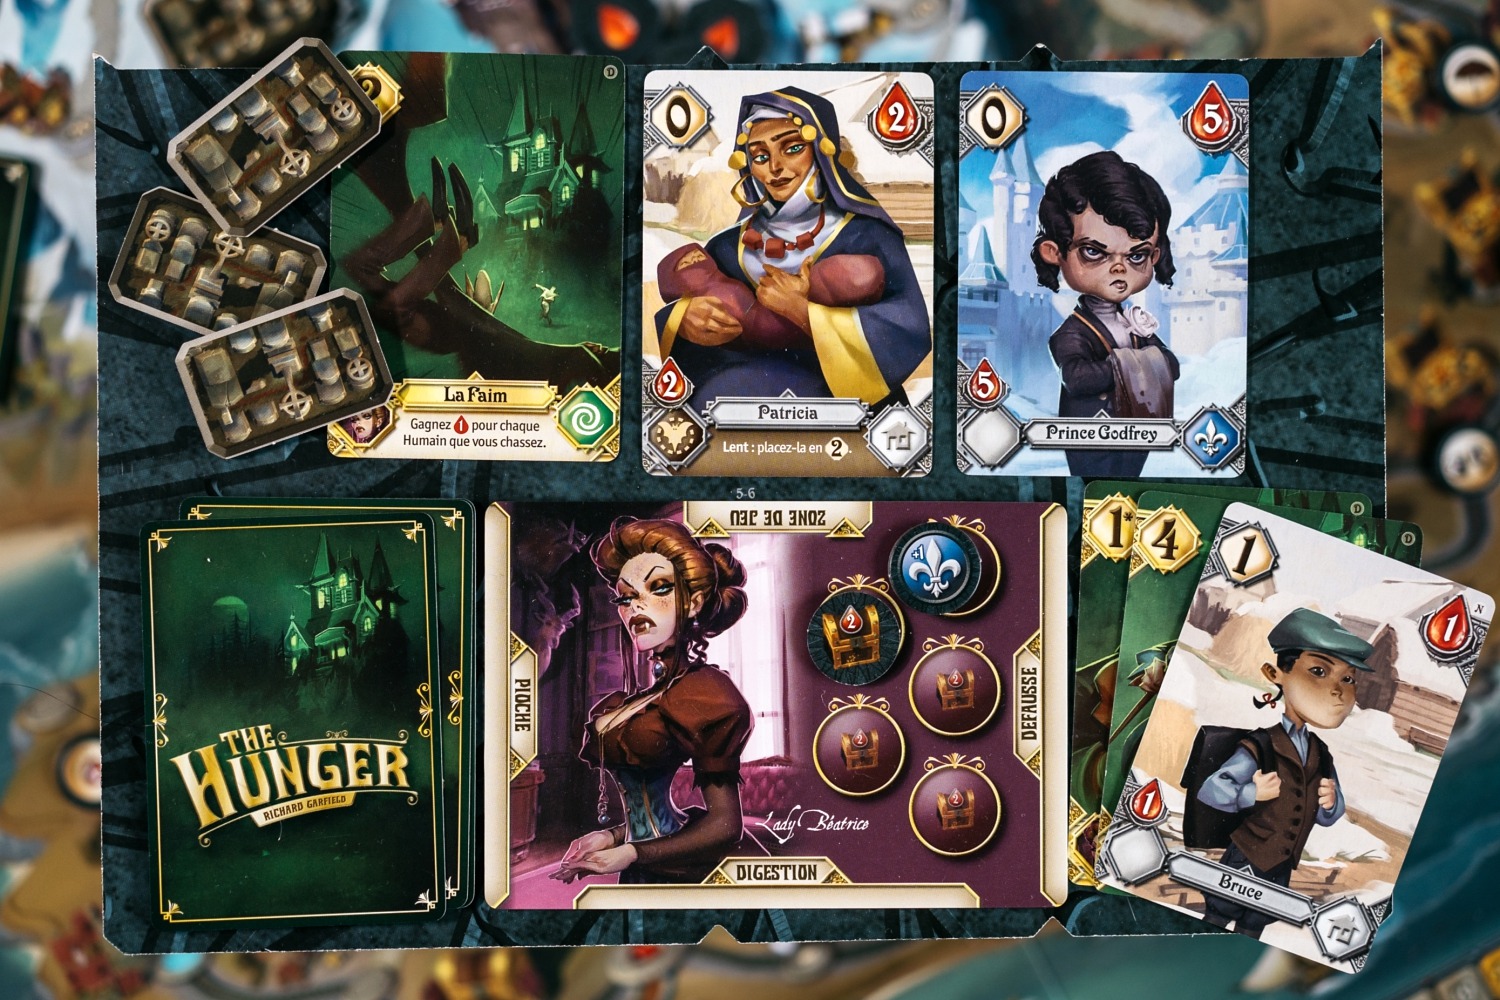 The Hunger origames jeu de société board game